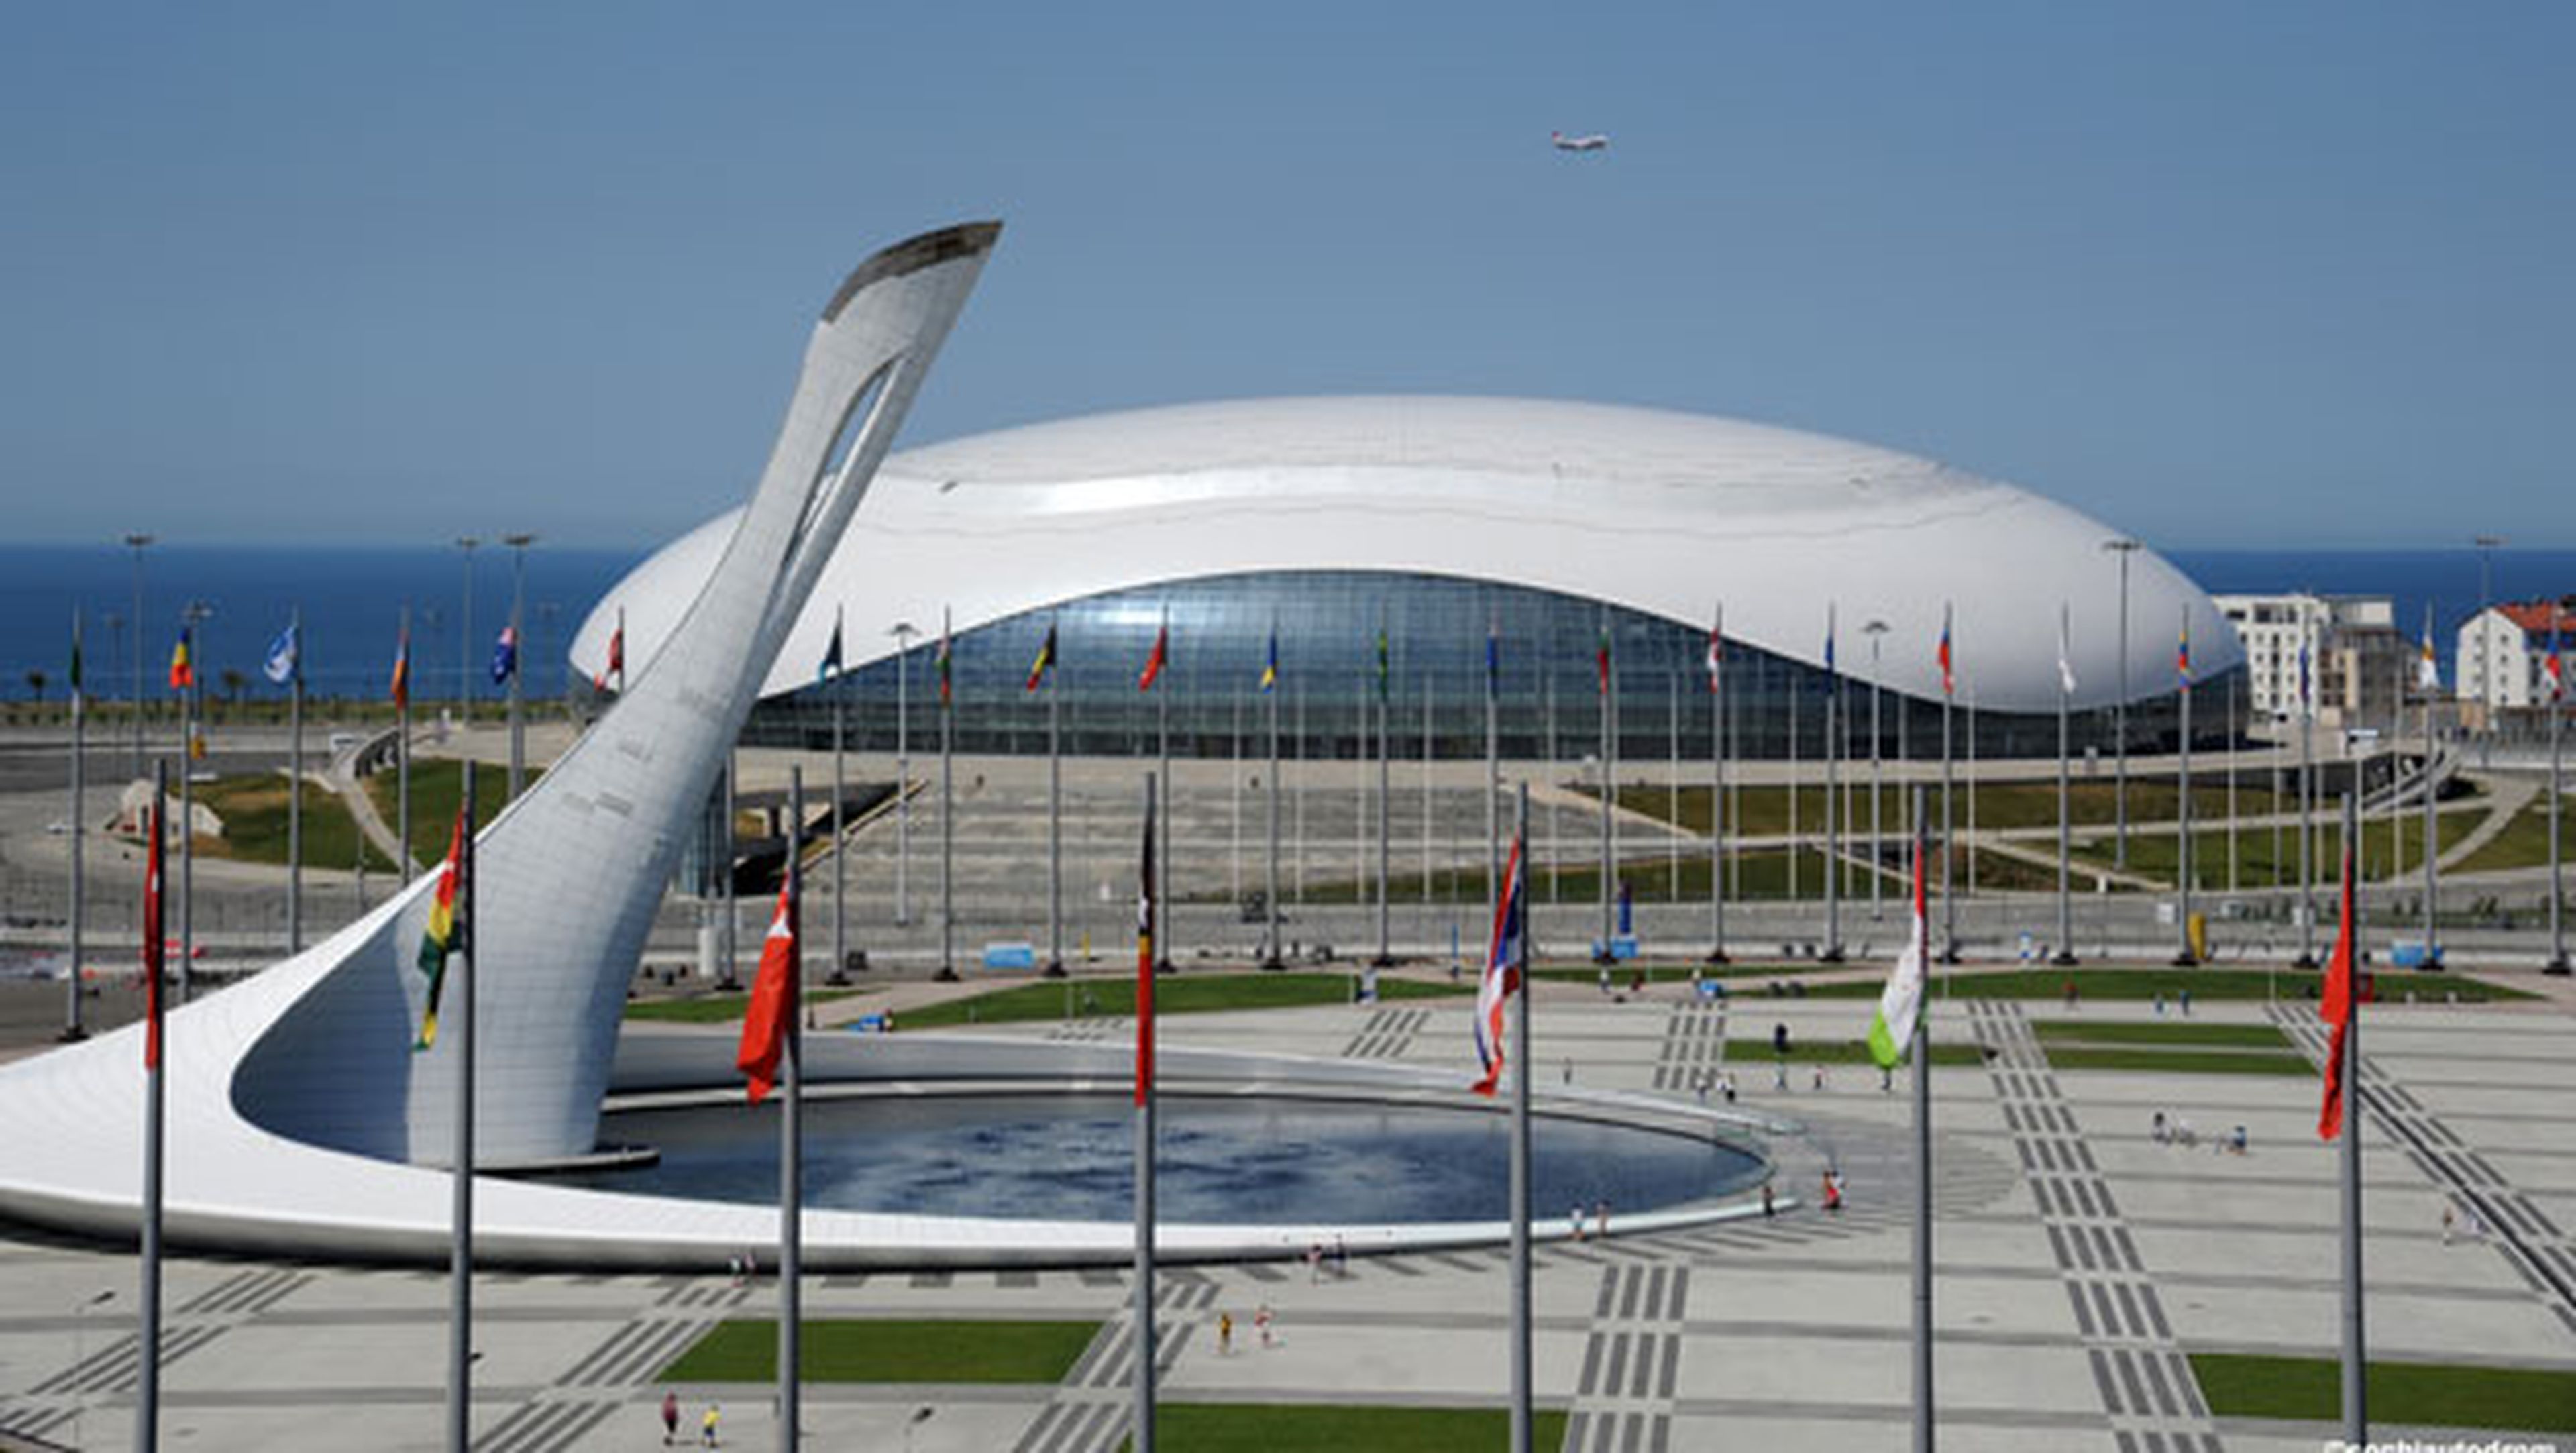 Circuito de Sochi para el GP Rusia F1 2014